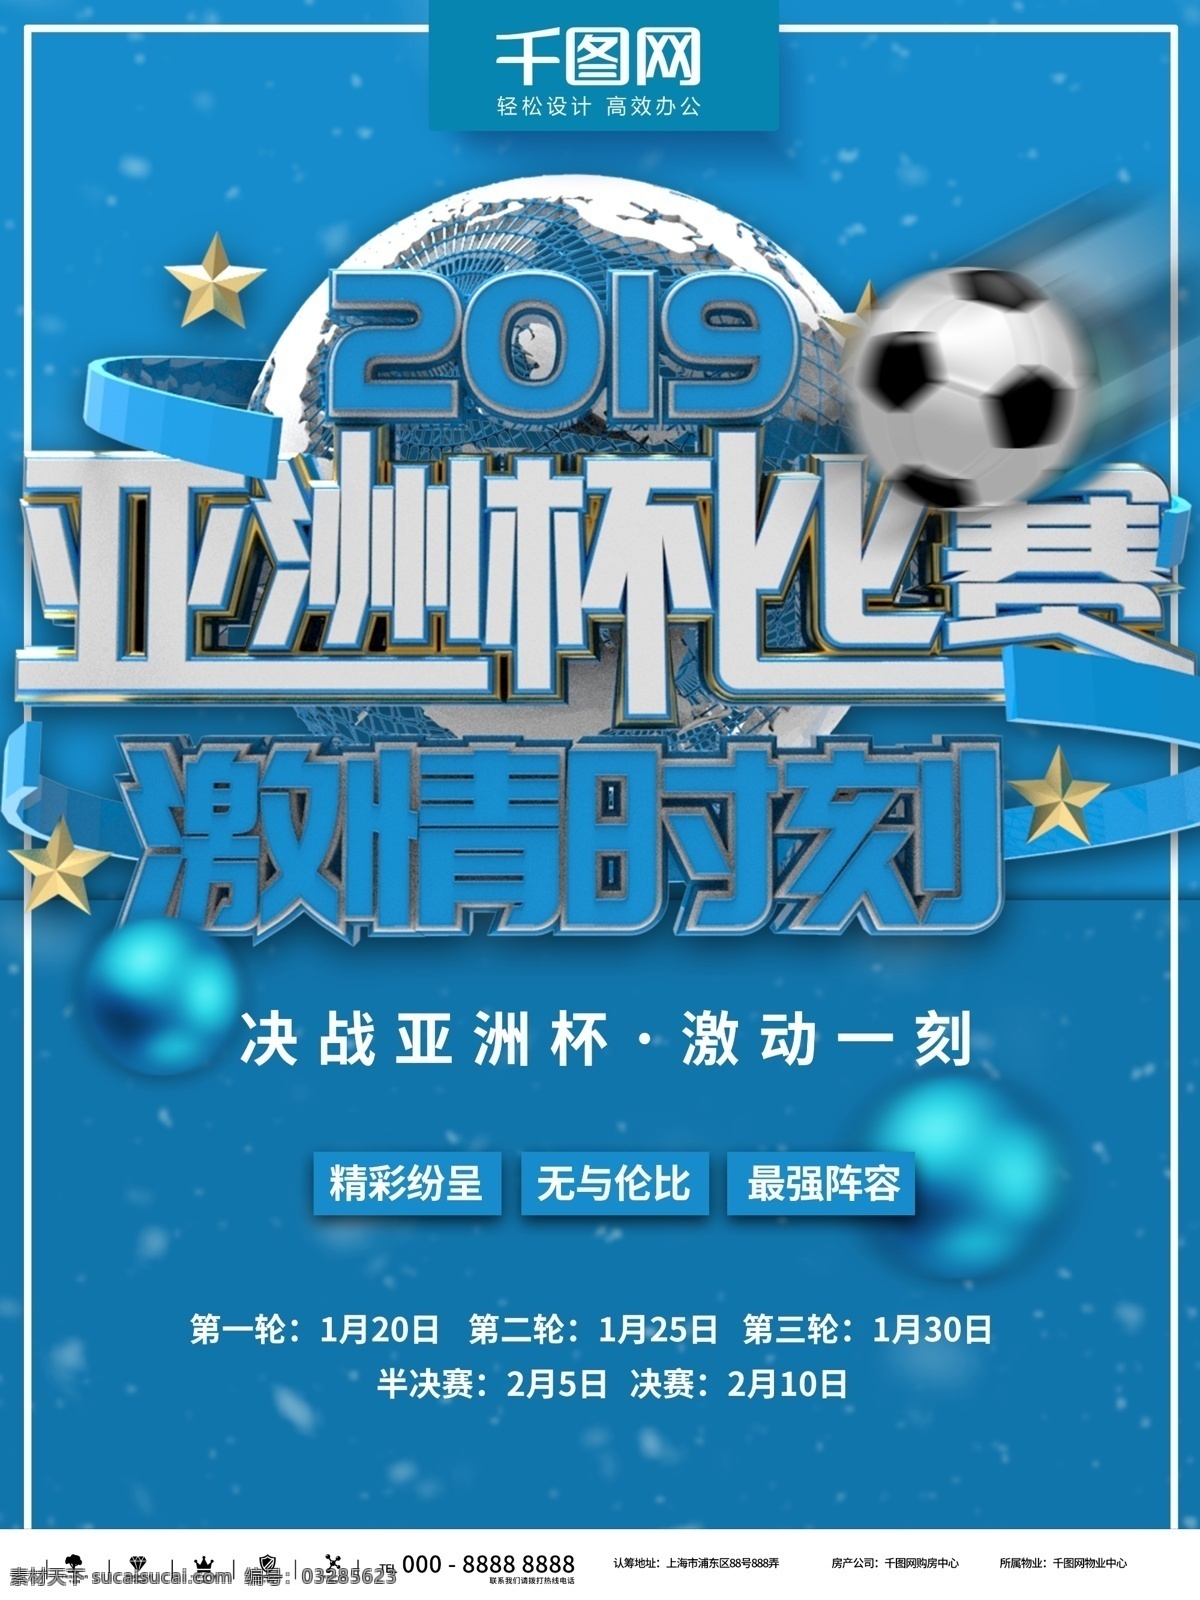 蓝色 简约 决战 亚洲杯 商业 宣传海报 大气 运动 健身 足球 立体 体育 比赛 赛程 宣传 活动 展示